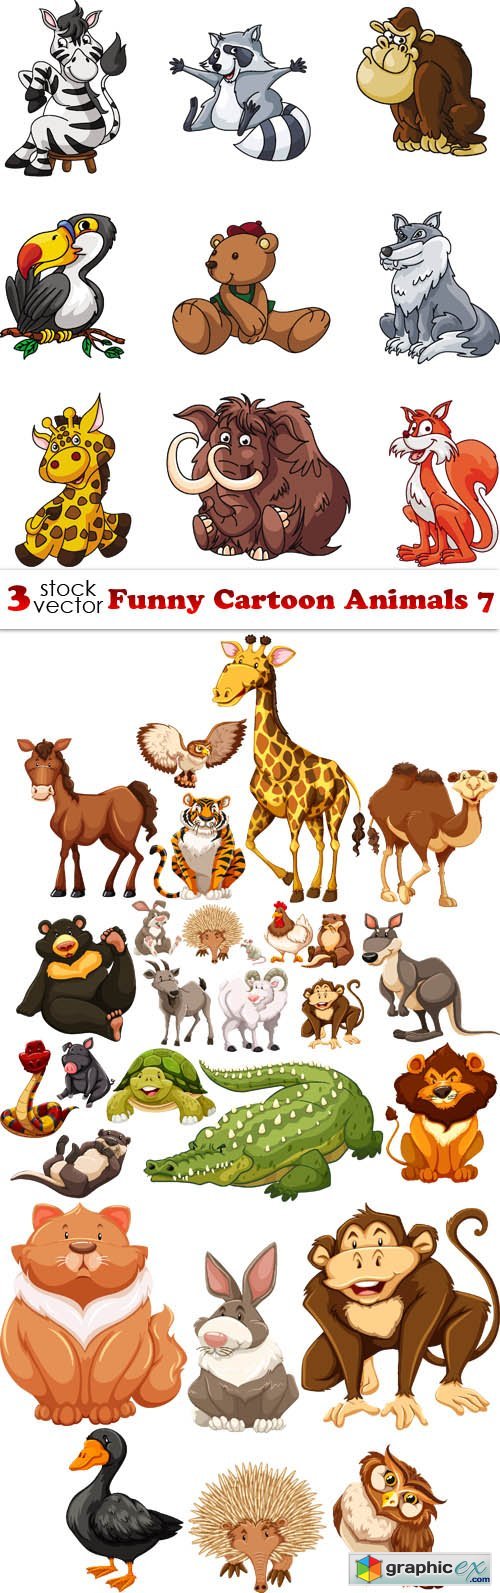 Vectors - Funny Cartoon Animals 7